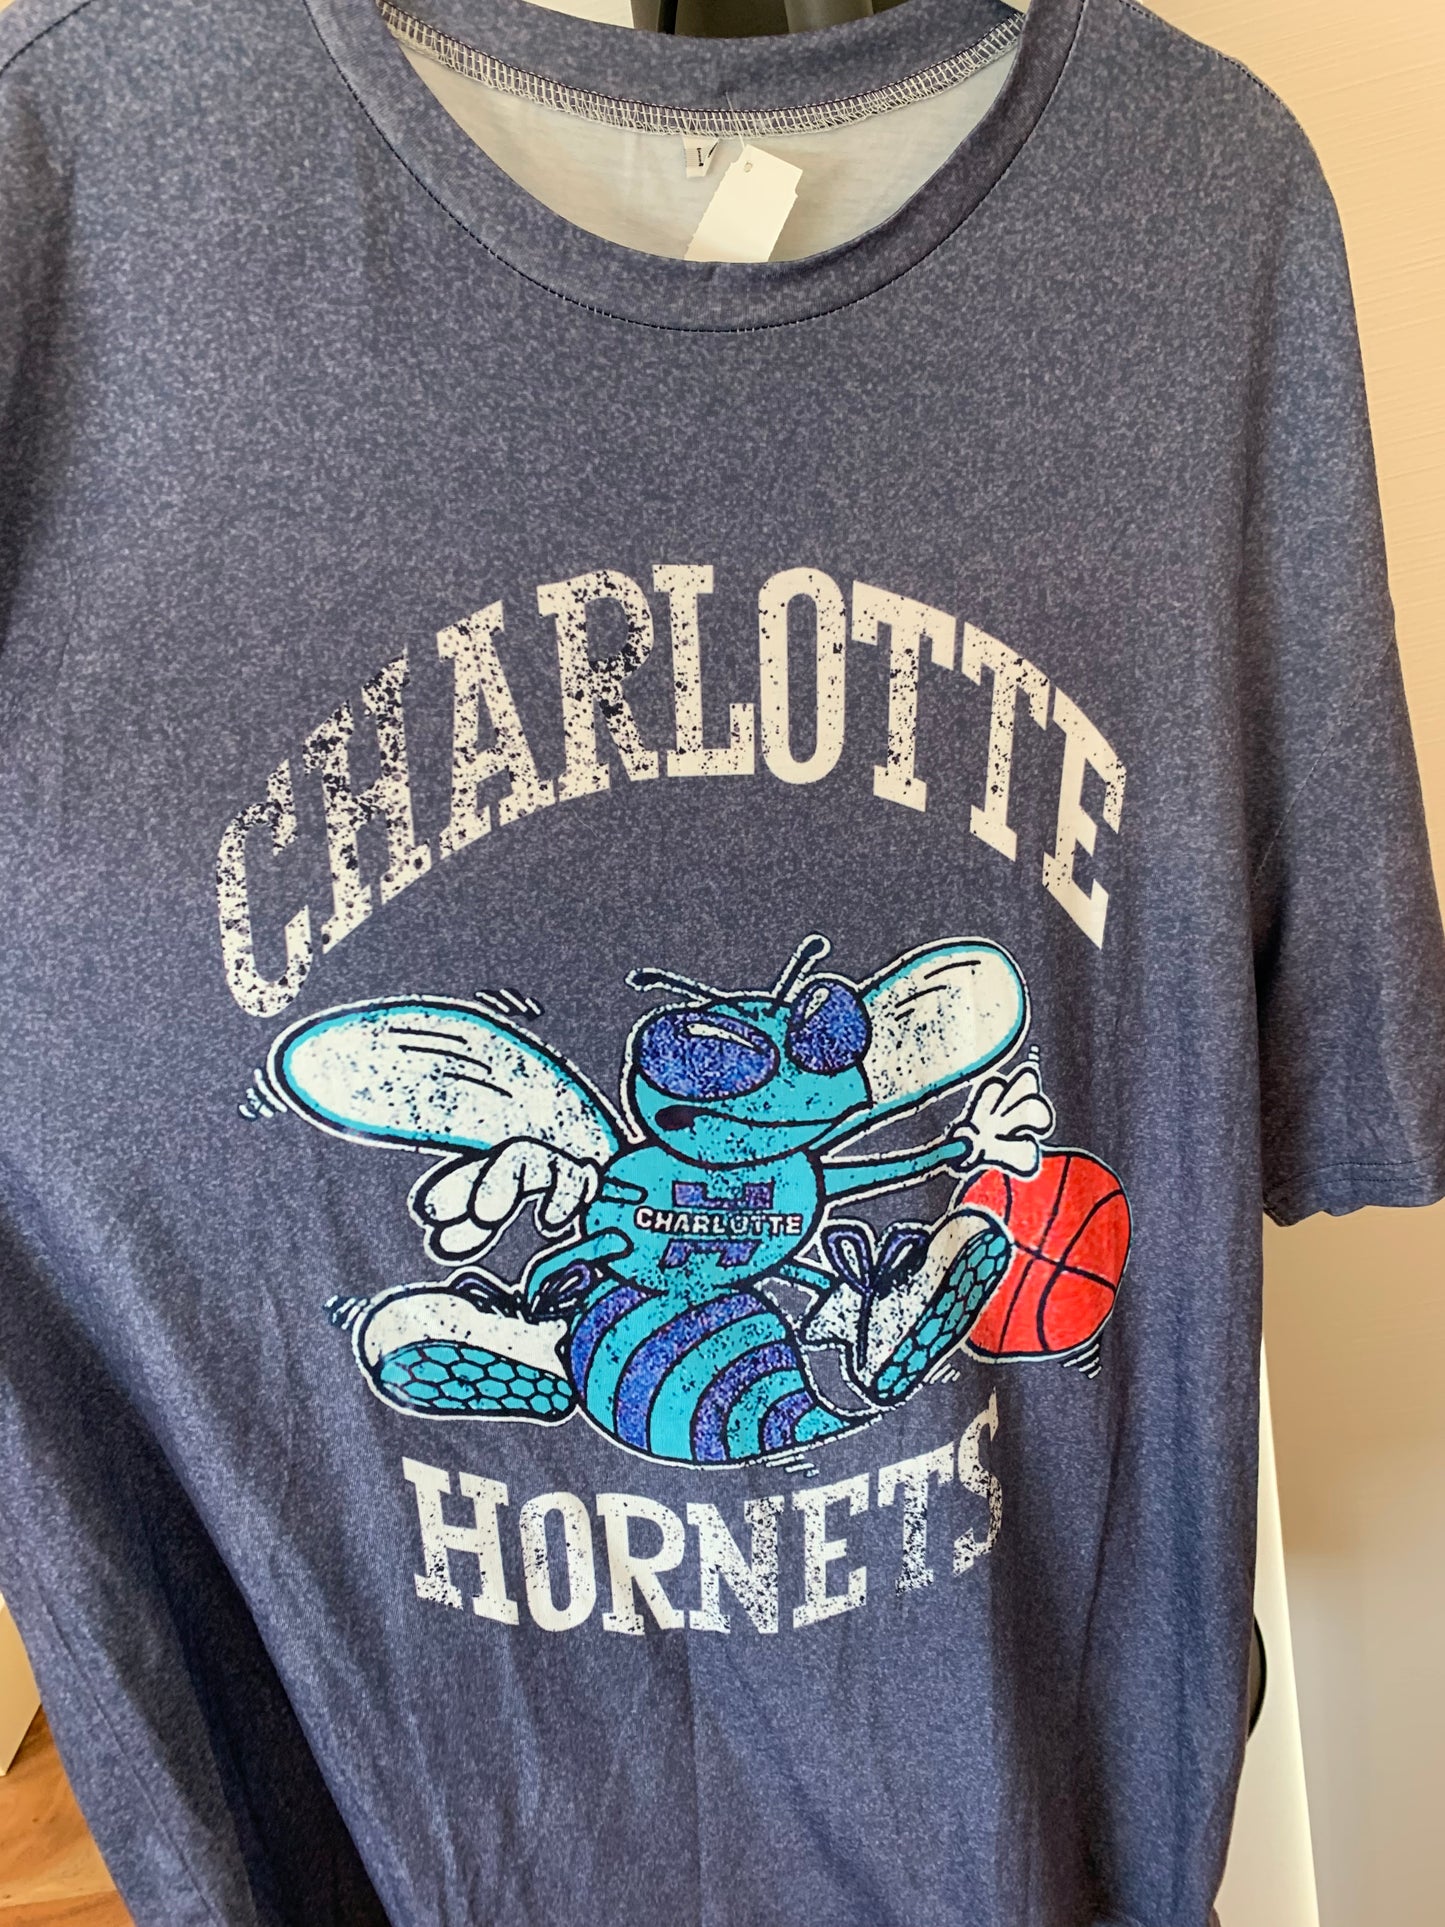 Charlotte hornets tee